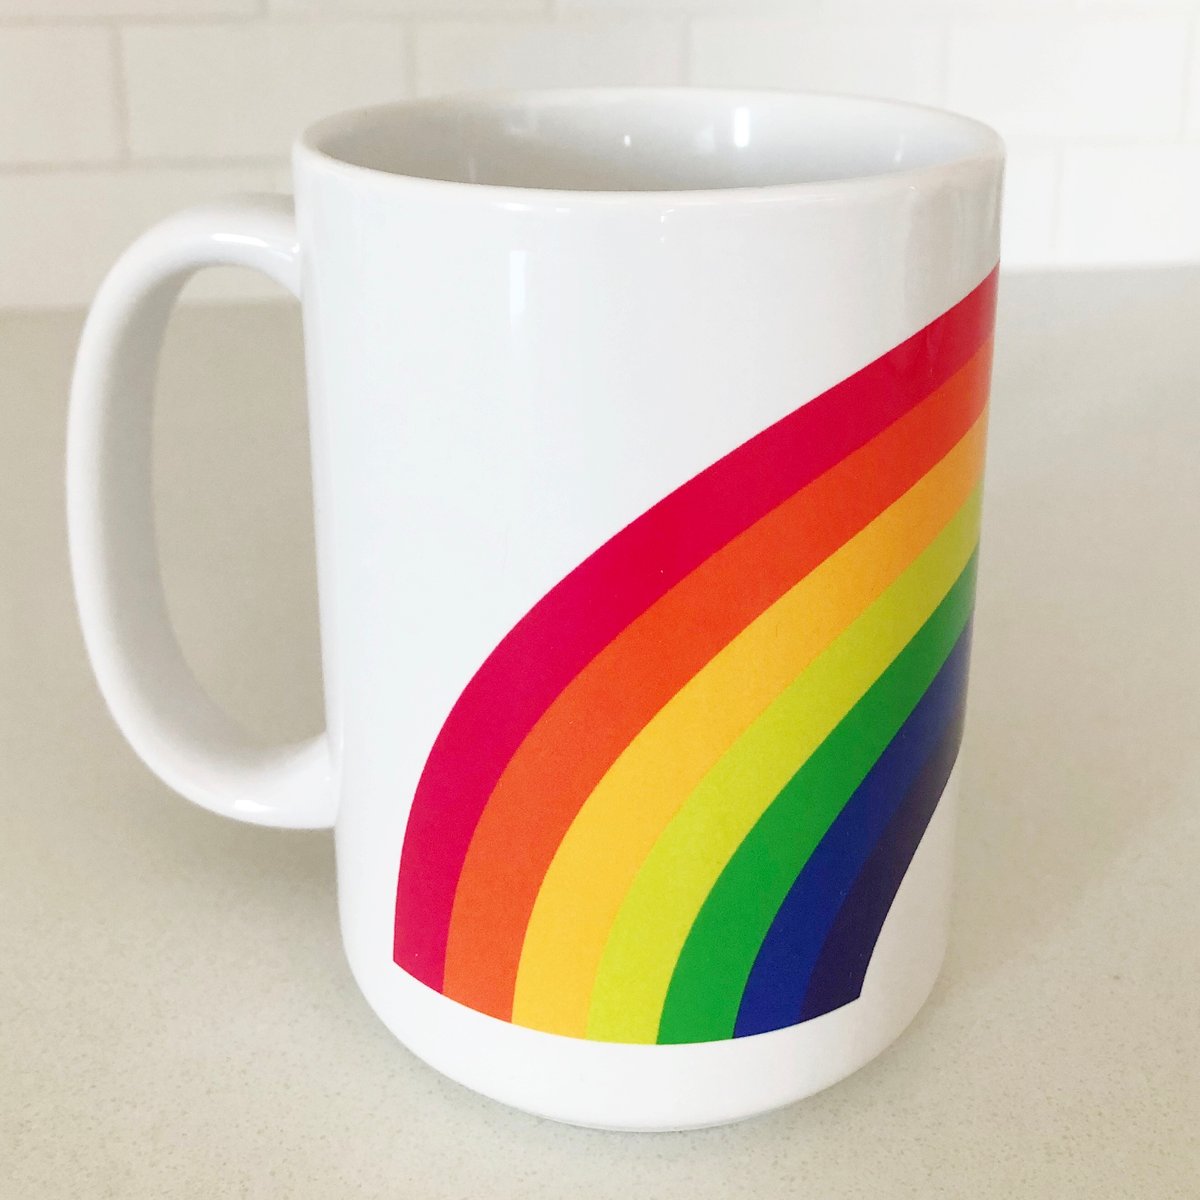 vintage rainbow mug - charlessturt.ca.